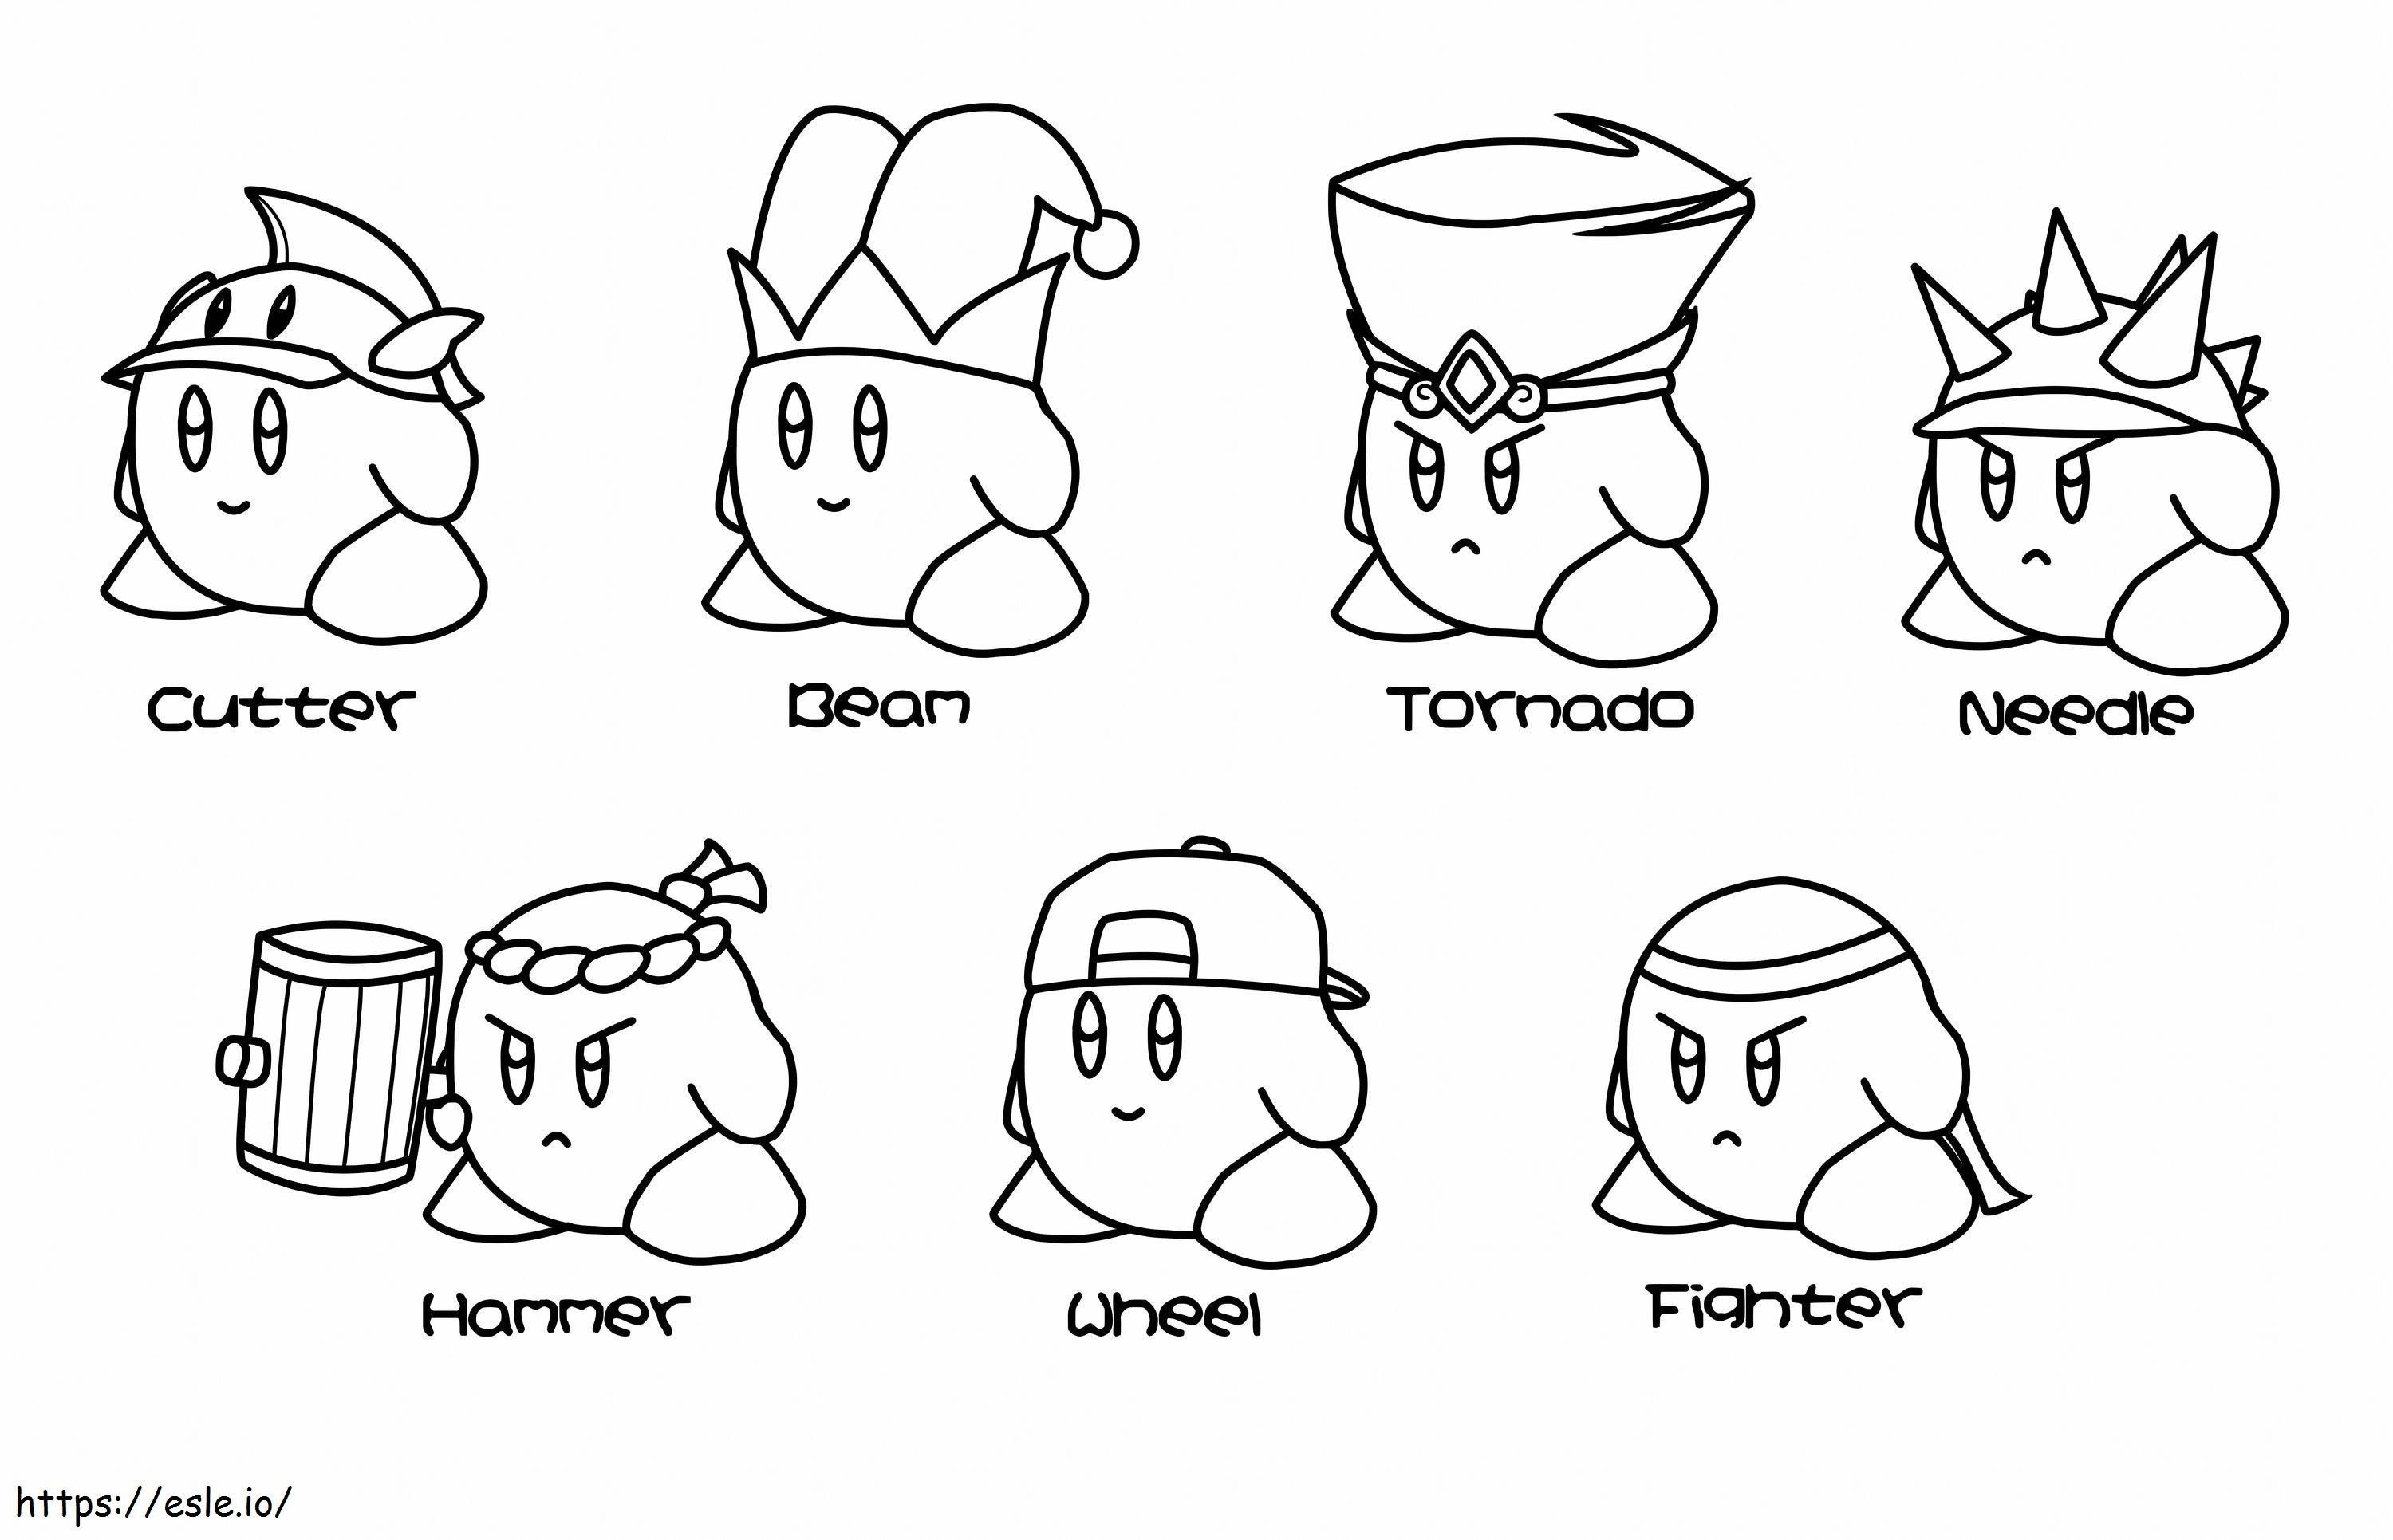 Kirby delle sette skin da colorare